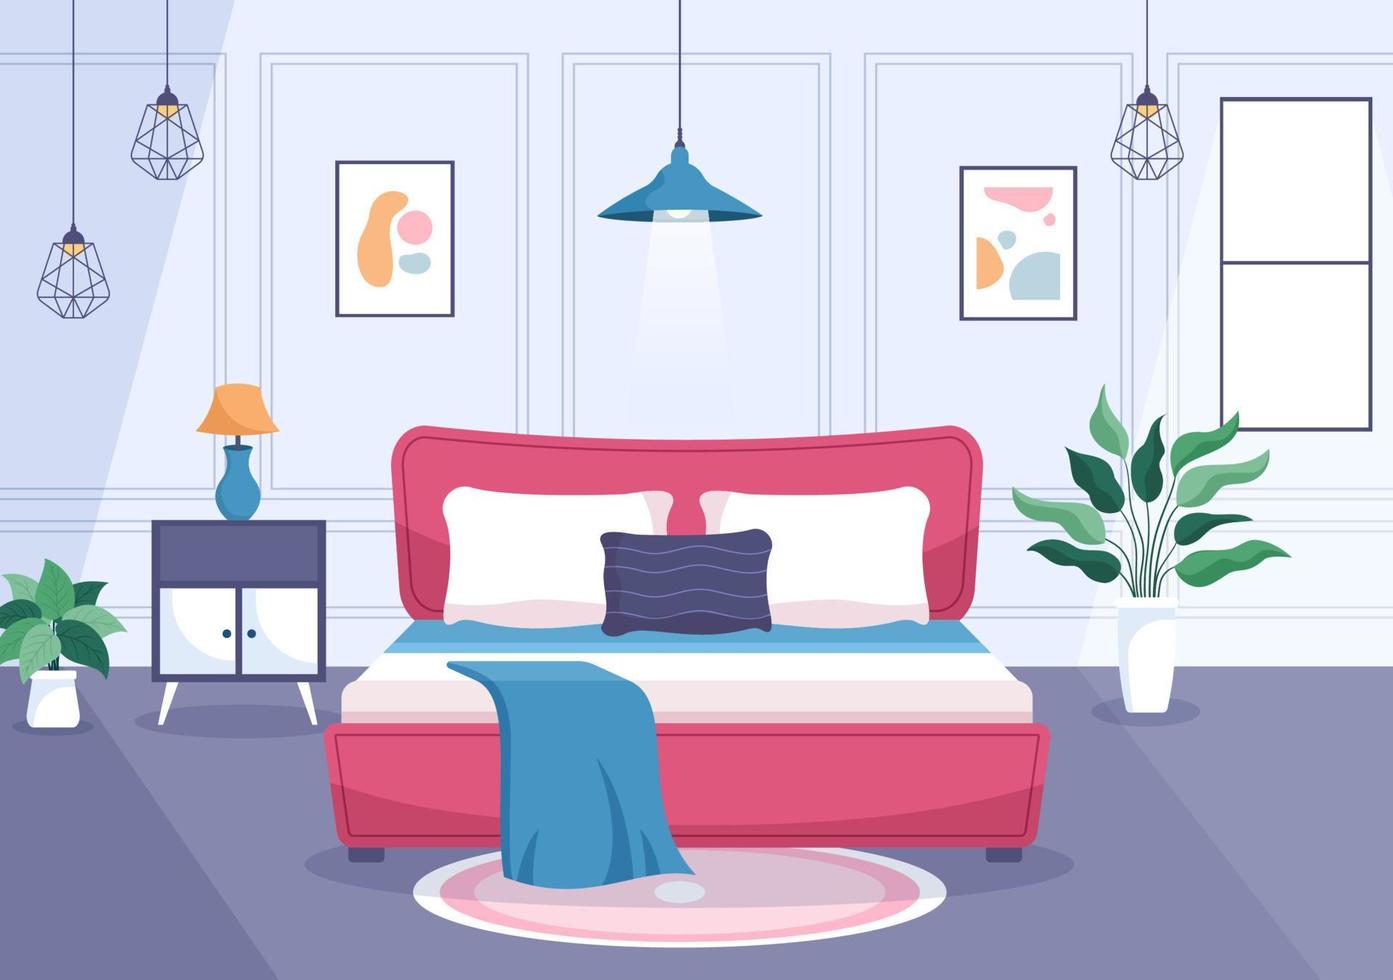 accogliente interno della camera da letto con mobili come letto, armadio, comodino, vaso, lampadario in stile moderno in fumetto illustrazione vettoriale